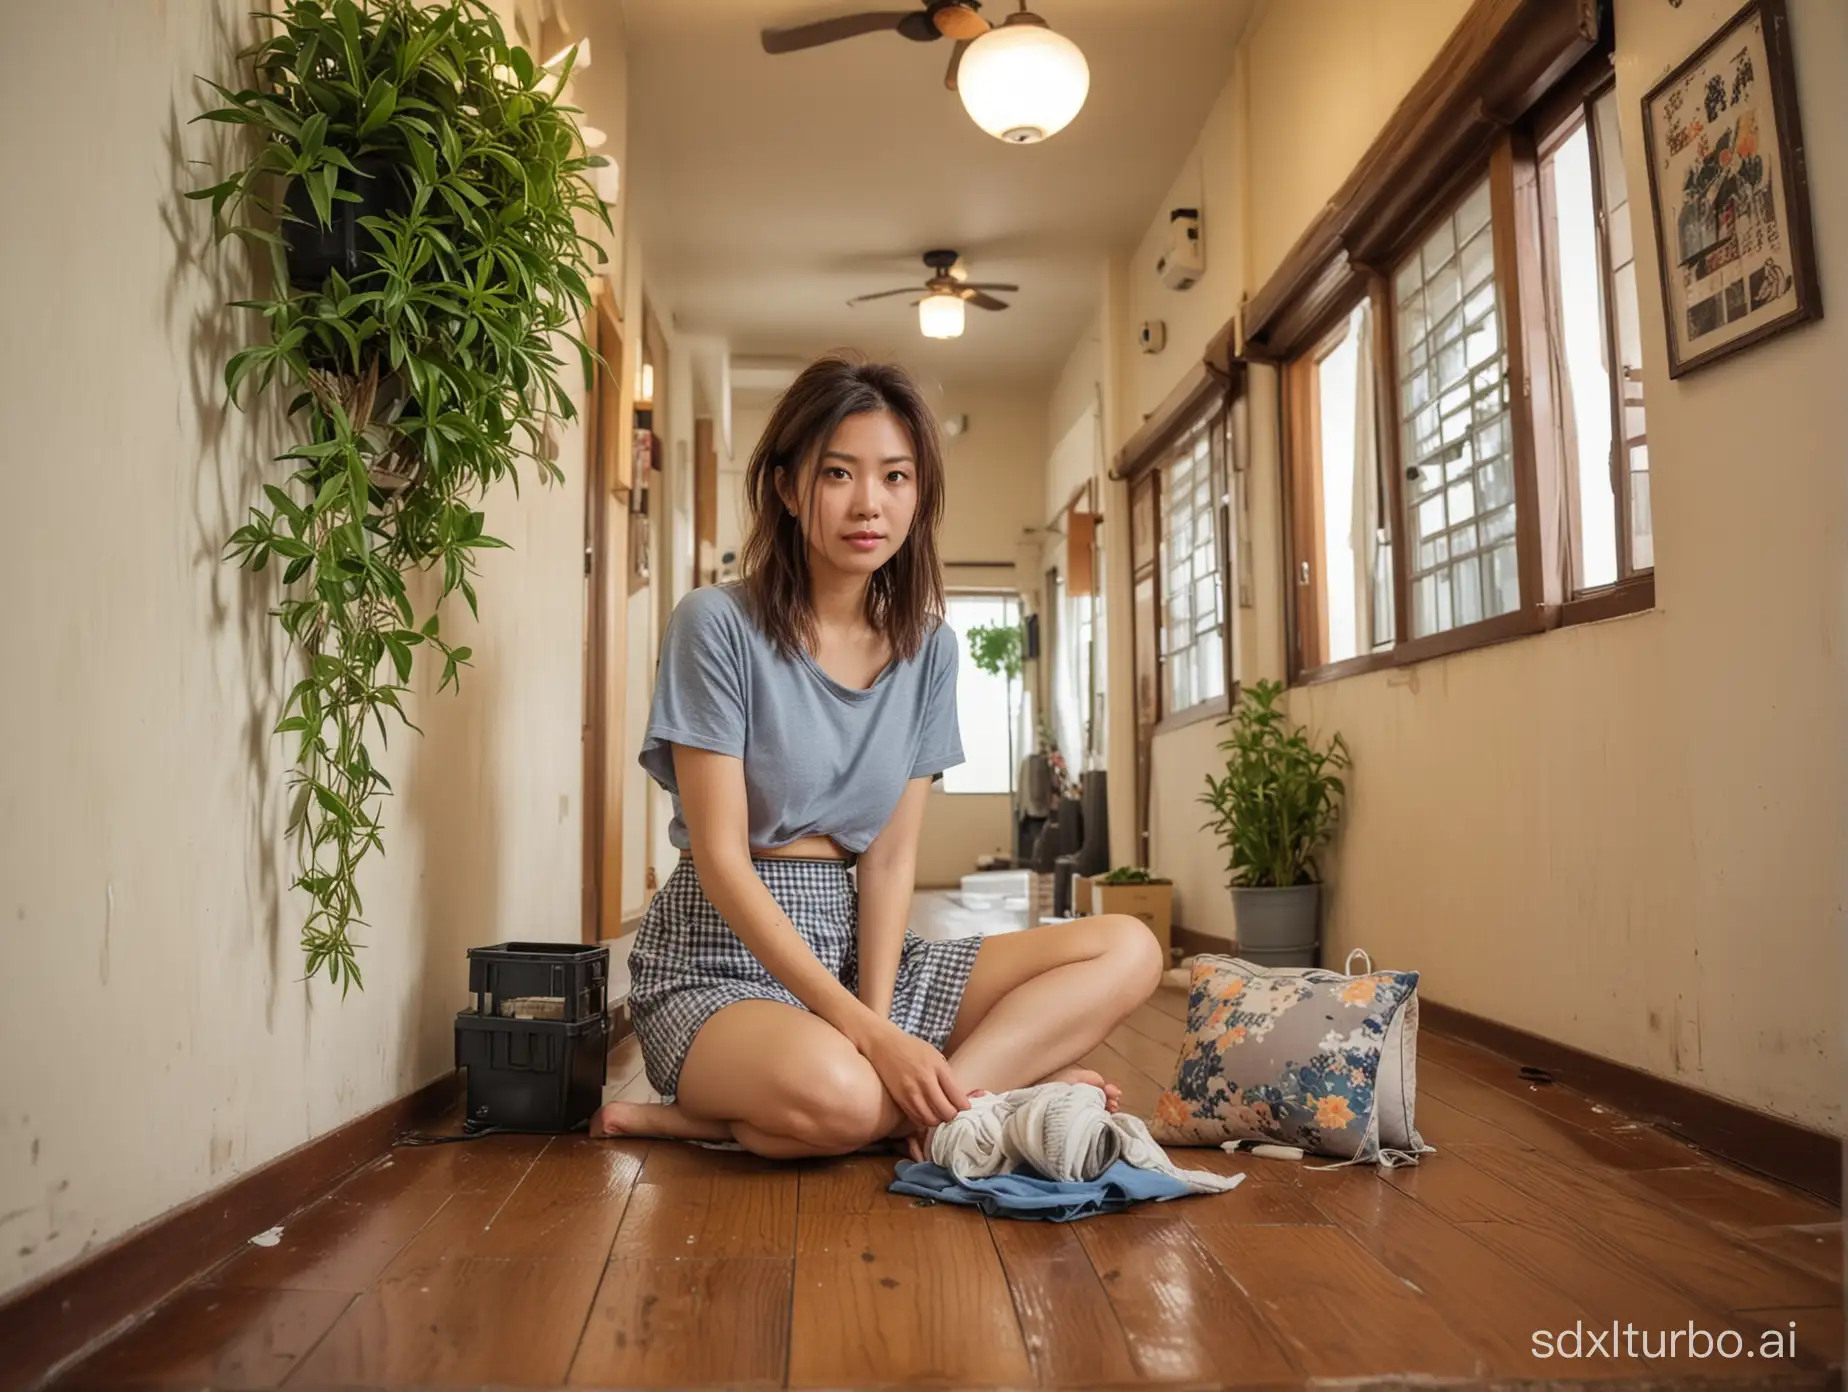 使用 GOPRO 相機風格生成一張照片,一位28 歲的台灣女性頭髮凌亂的照片。 看起來有點專注。 她在日式廊道裡,有小電風扇、蚊香、拖鞋、燈籠和一些小盆栽。 日式廊道旁邊是個有花草的日式庭園,外面正在下雨。 女人穿著休閒短裙,赤著腳在木地板上看漫畫,拿著枕頭。